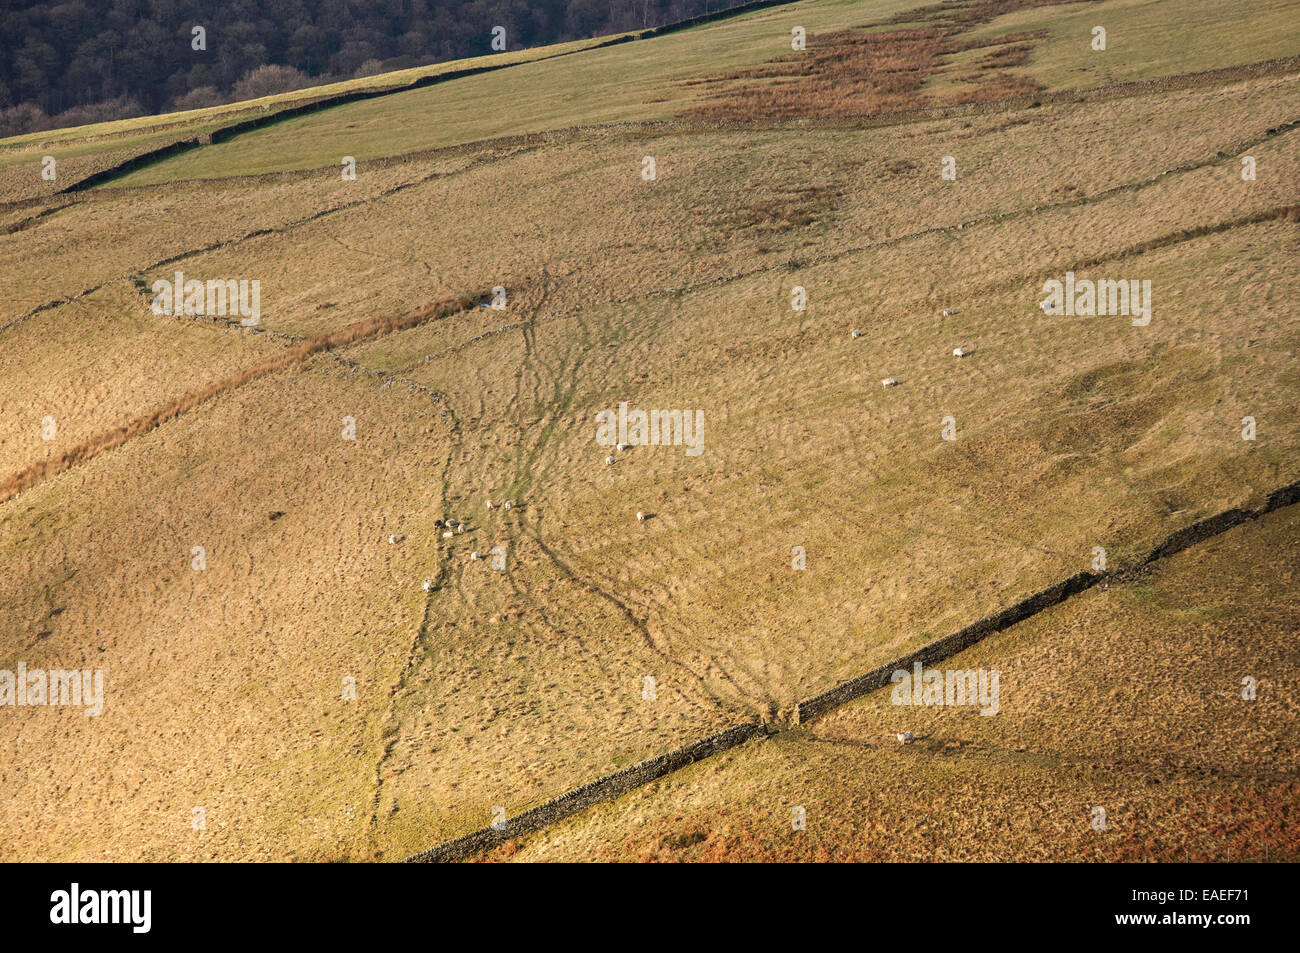 Pecora su una collina nel Peak District. Immagine astratta cercando di fronte alla collina con via attraverso il terreno. Foto Stock